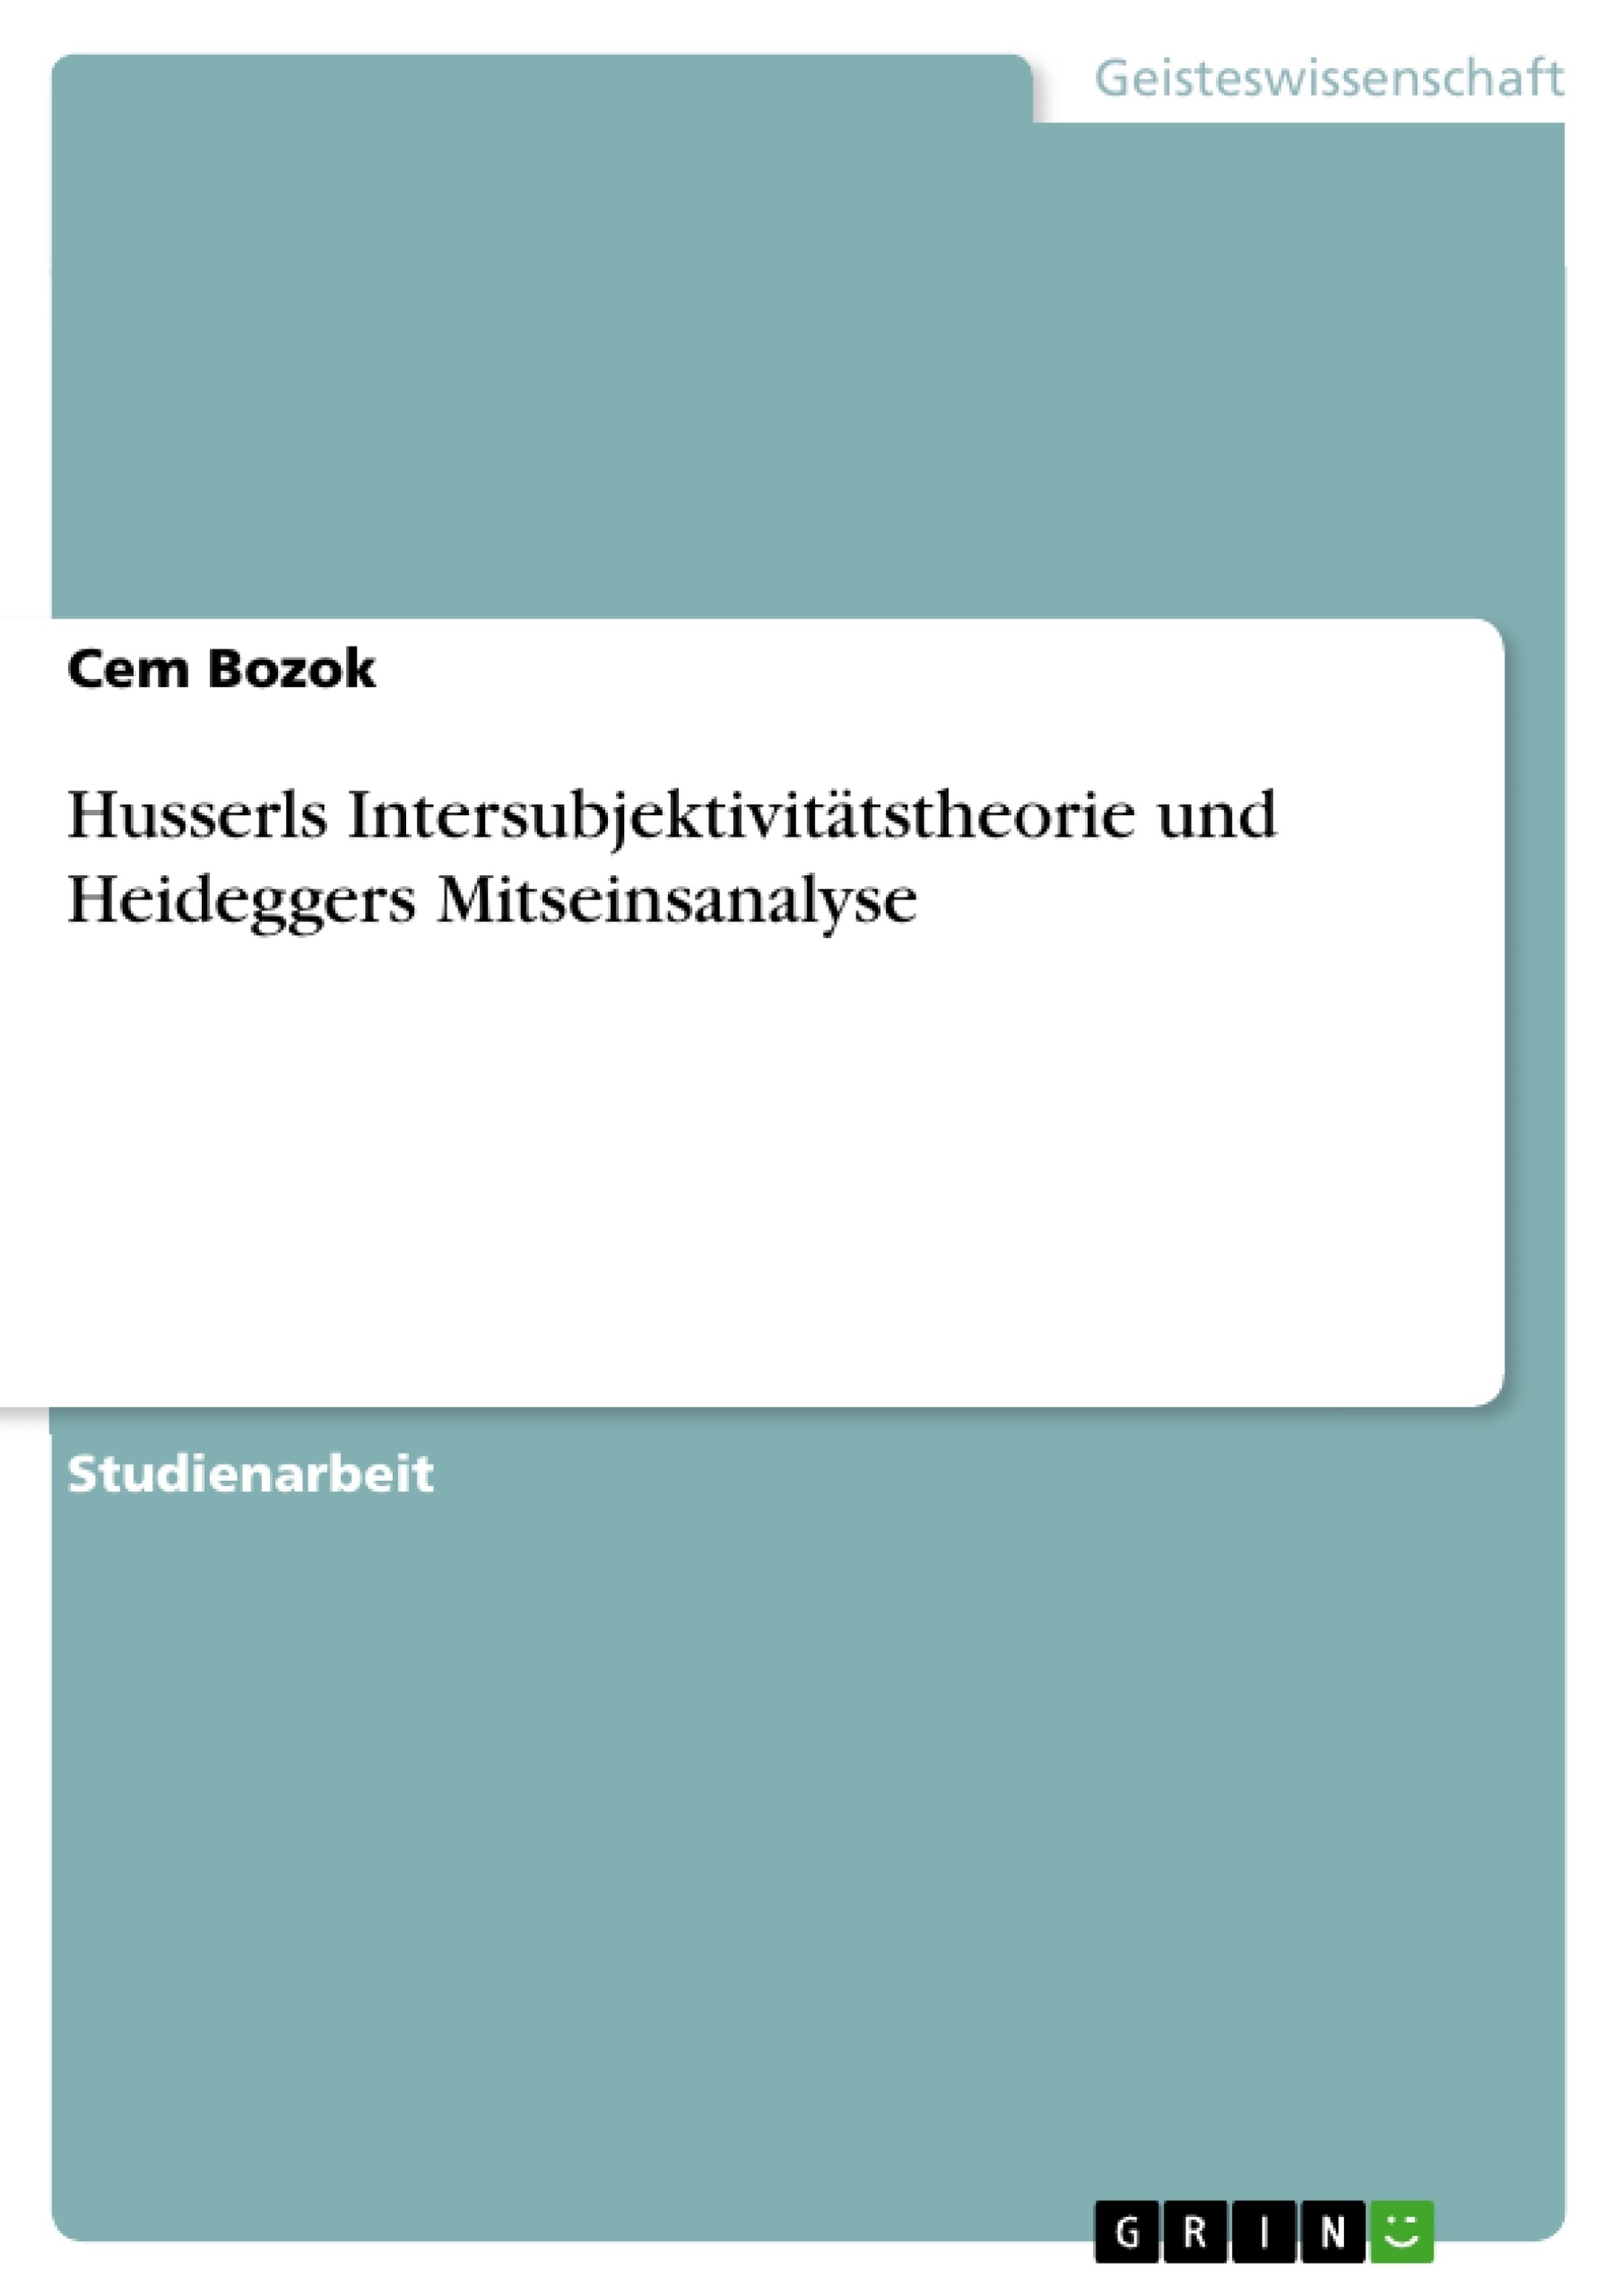 Husserls Intersubjektivitätstheorie und Heideggers Mitseinsanalyse